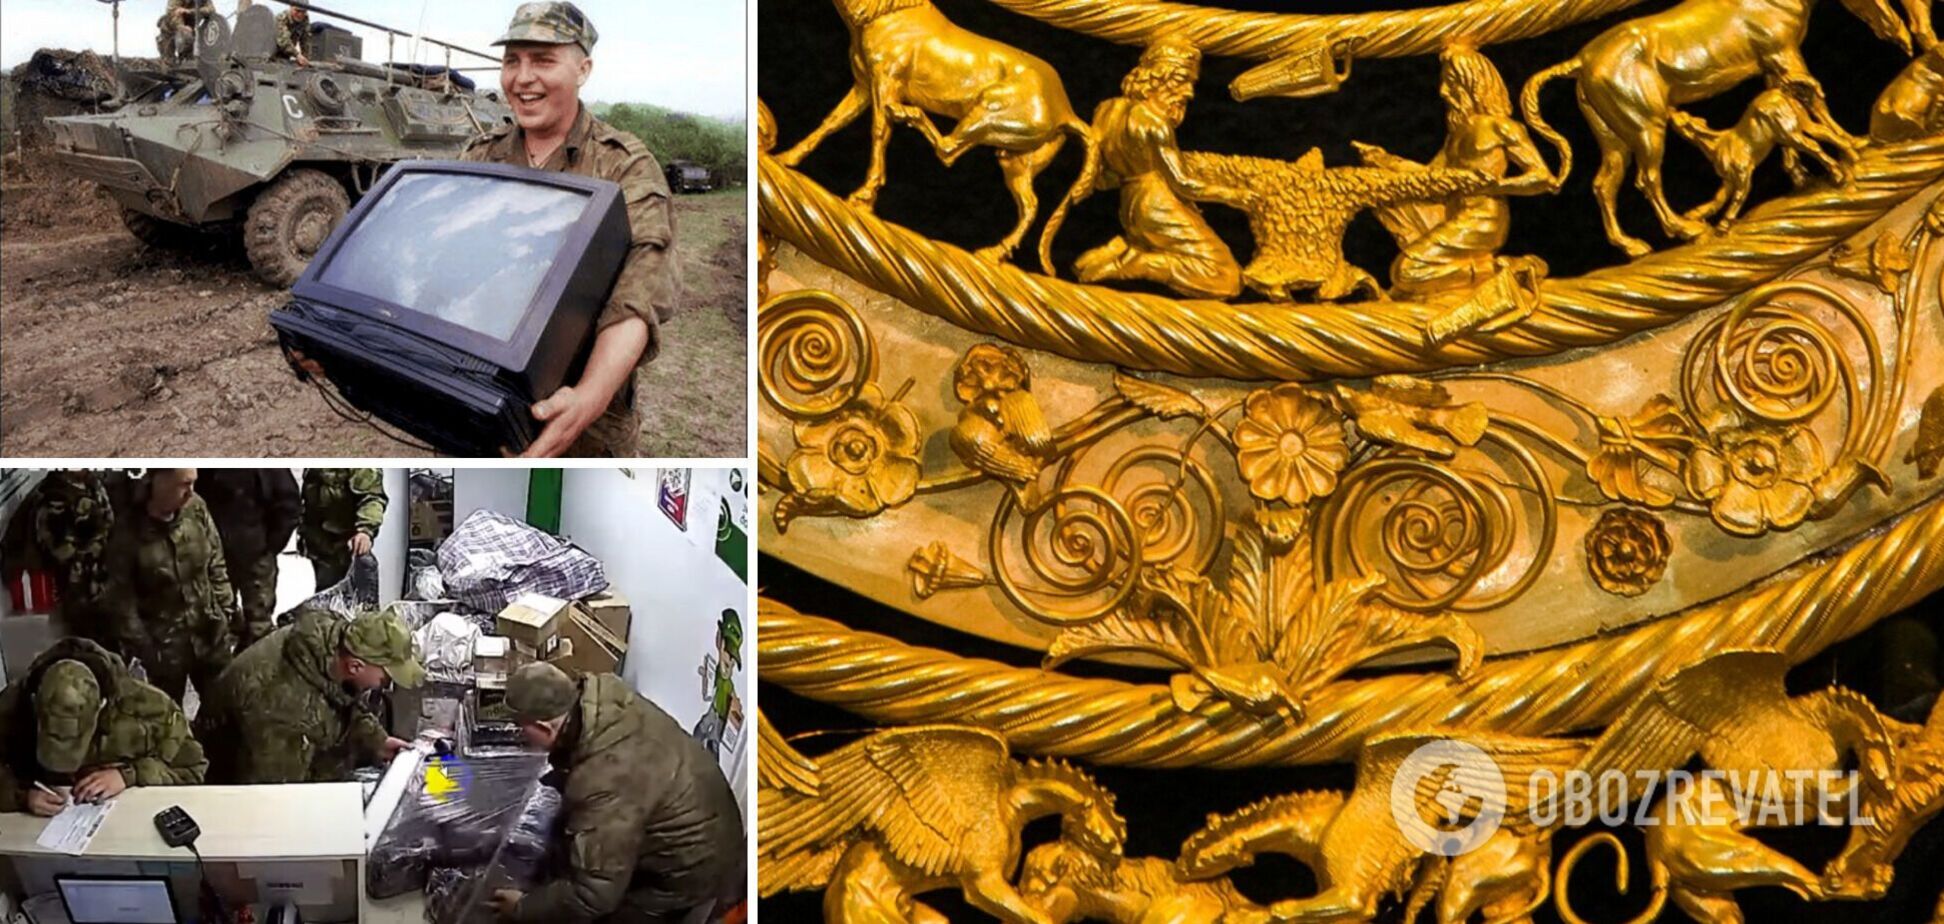 Скифское золото и ценные артефакты: Россия вывозит из захваченных территорий Украины исторические ценности